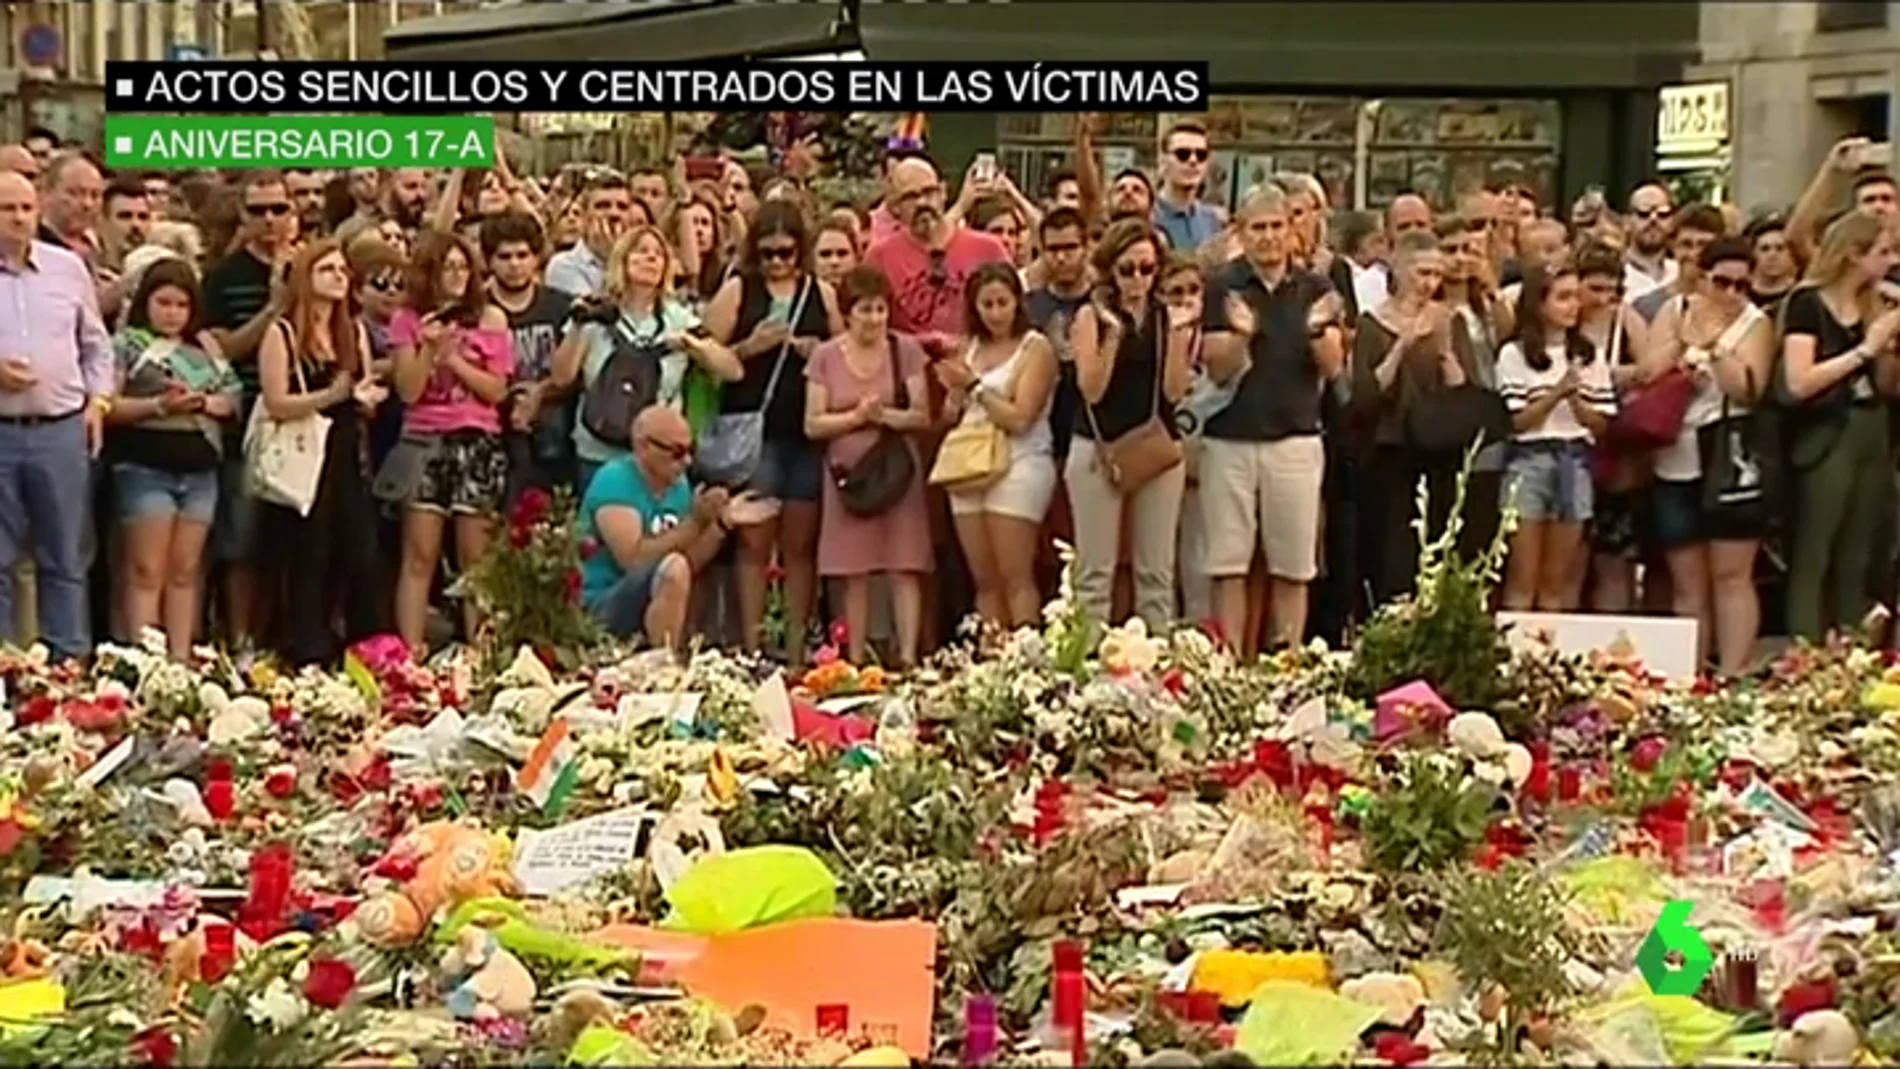 Actos sencillos y centrados en las víctimas: así se desarrollarán los homenajes en el aniversario del atentado de Barcelona